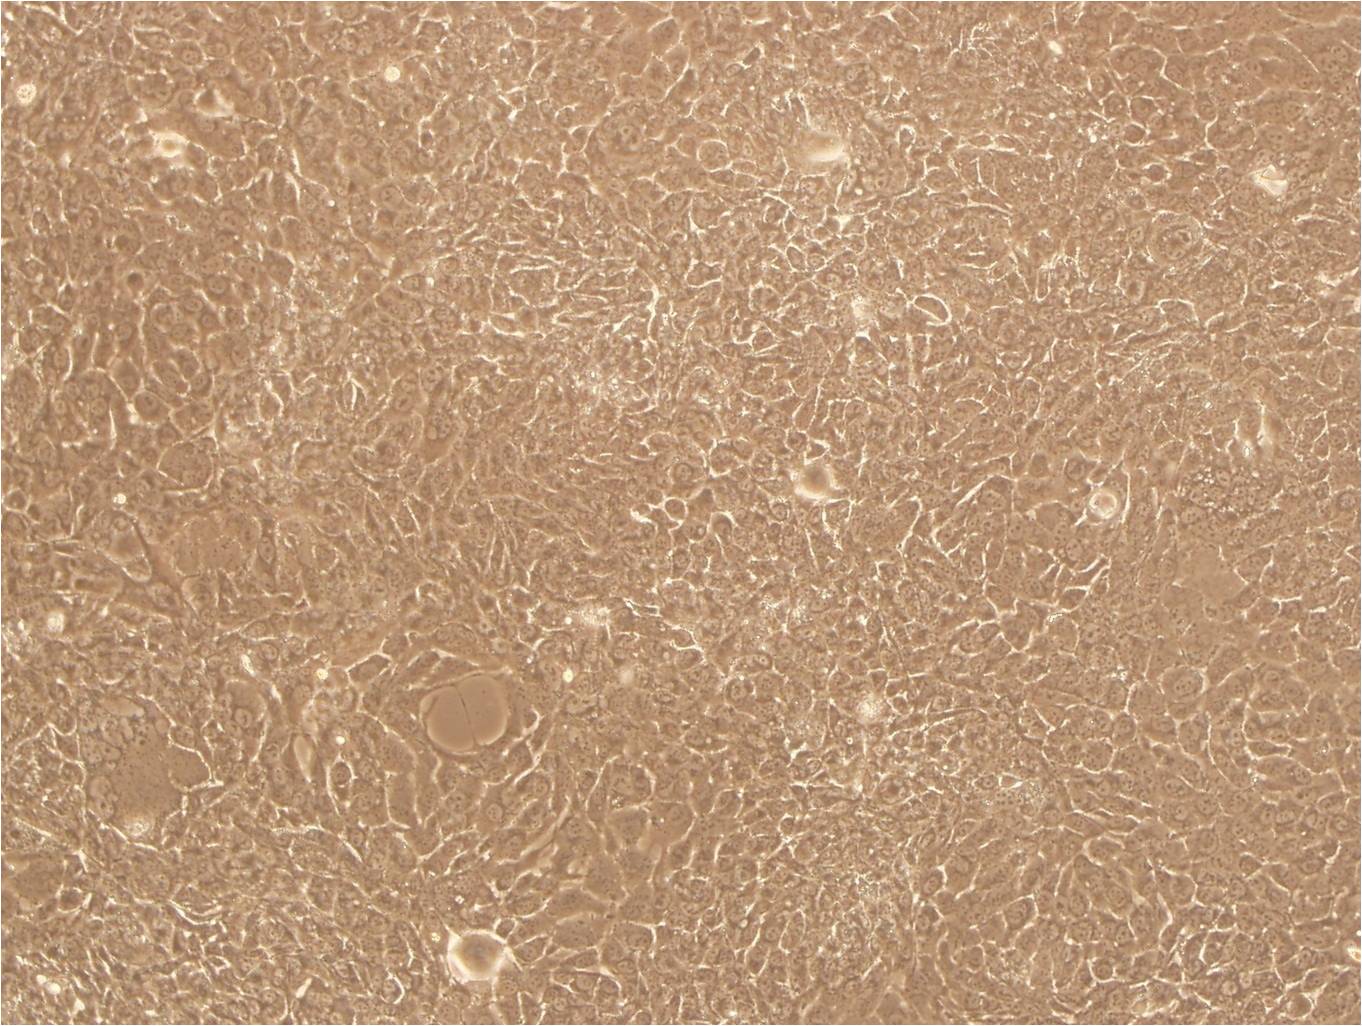 SNU-475:人肝癌复苏细胞(提供STR鉴定图谱)